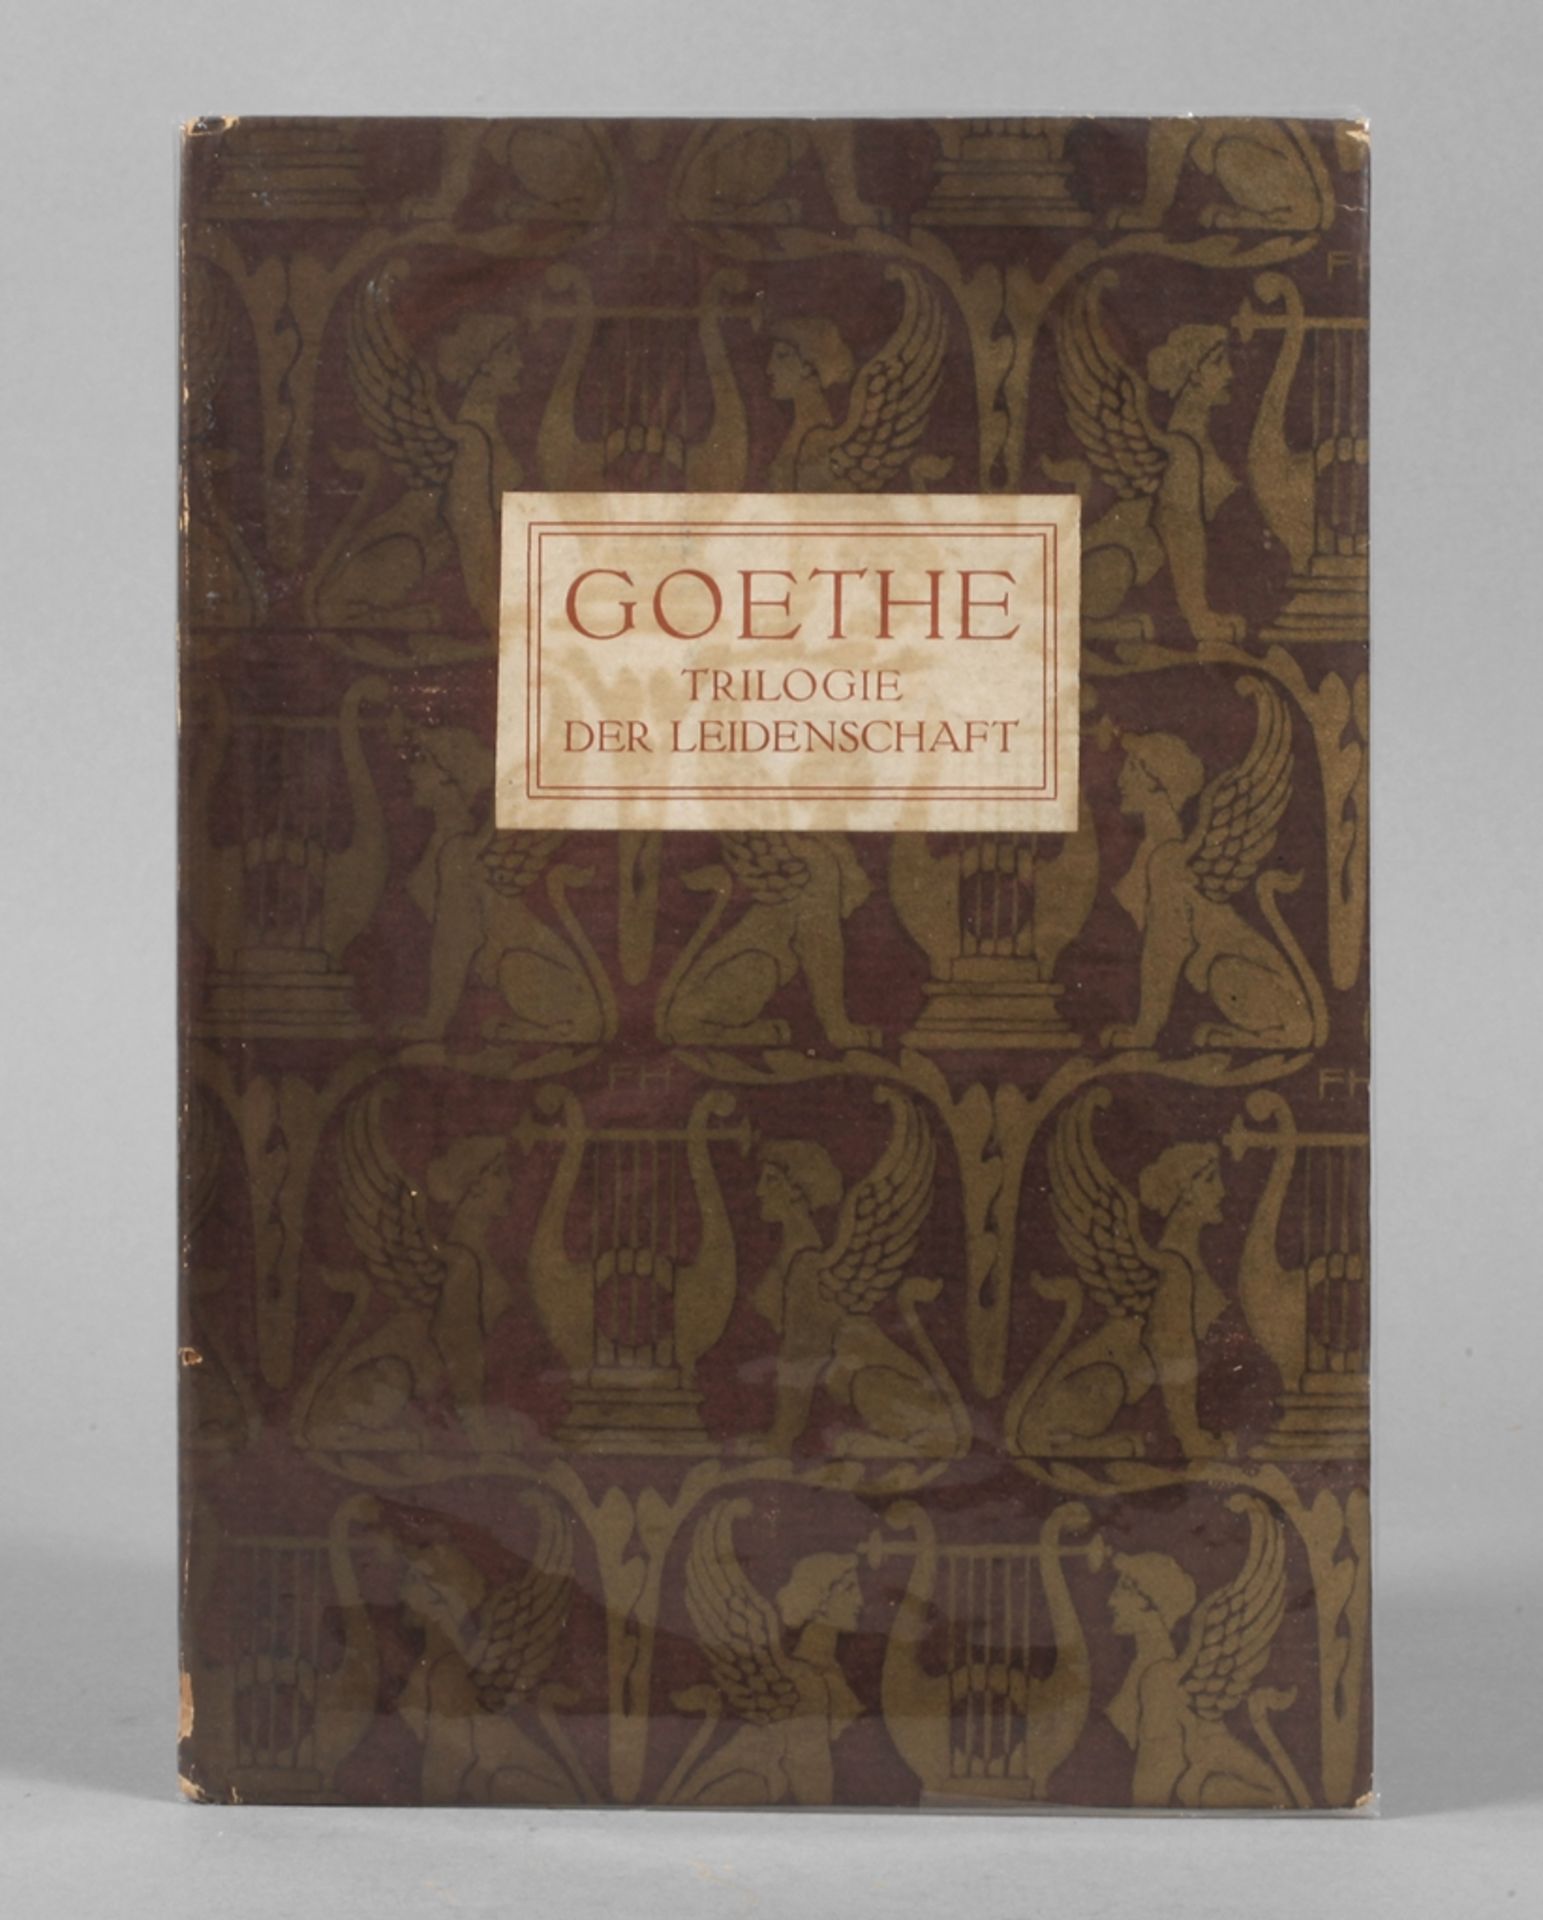 Goethe - Trilogie der Leidenschaft An Werther/Elegie/Aussöhnung, 1918 bei Breitkopf und Härtel in